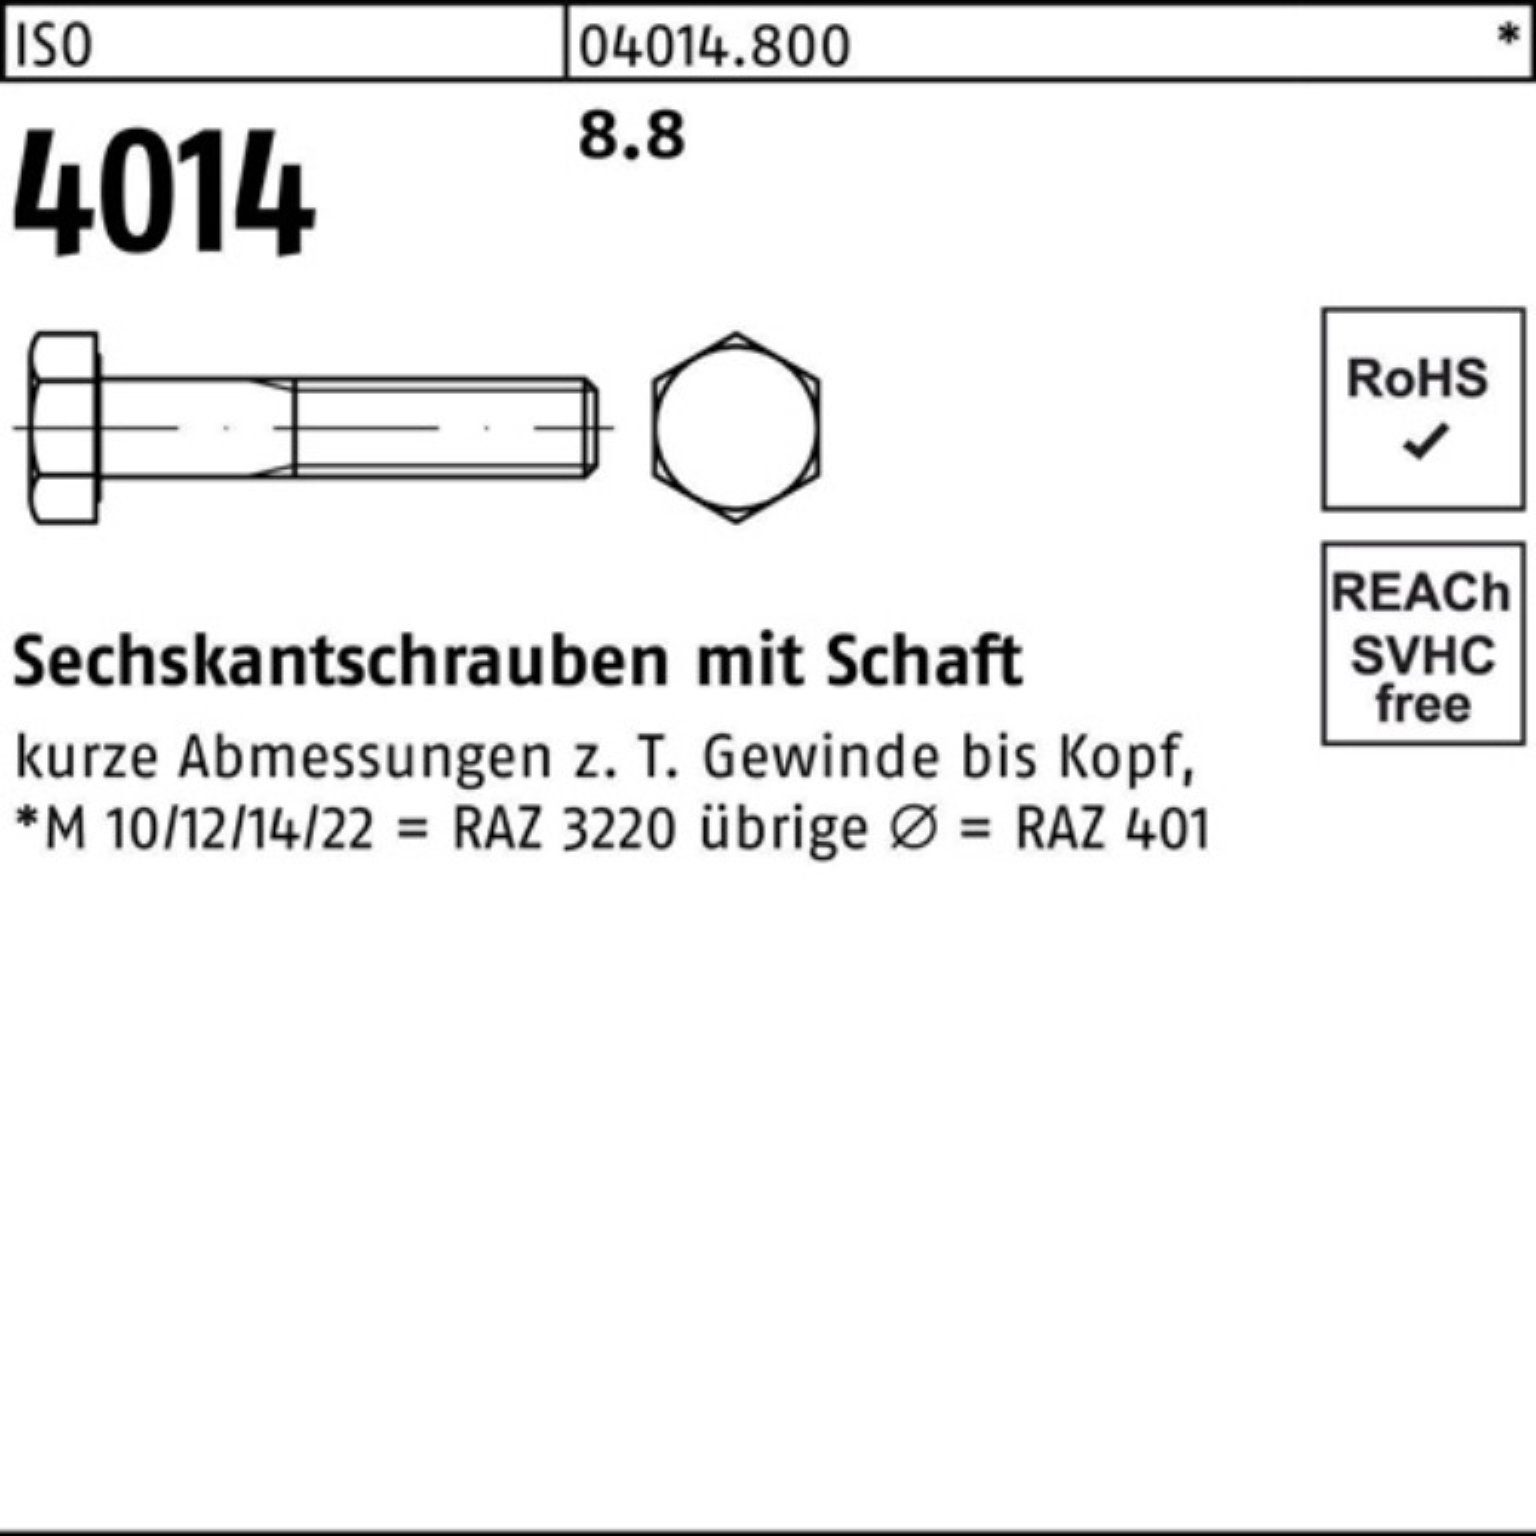 Pack 4014 ISO 130 8.8 M39x 1 Sechskantschraube 100er ISO Stück Sechskantschraube Schaft Bufab